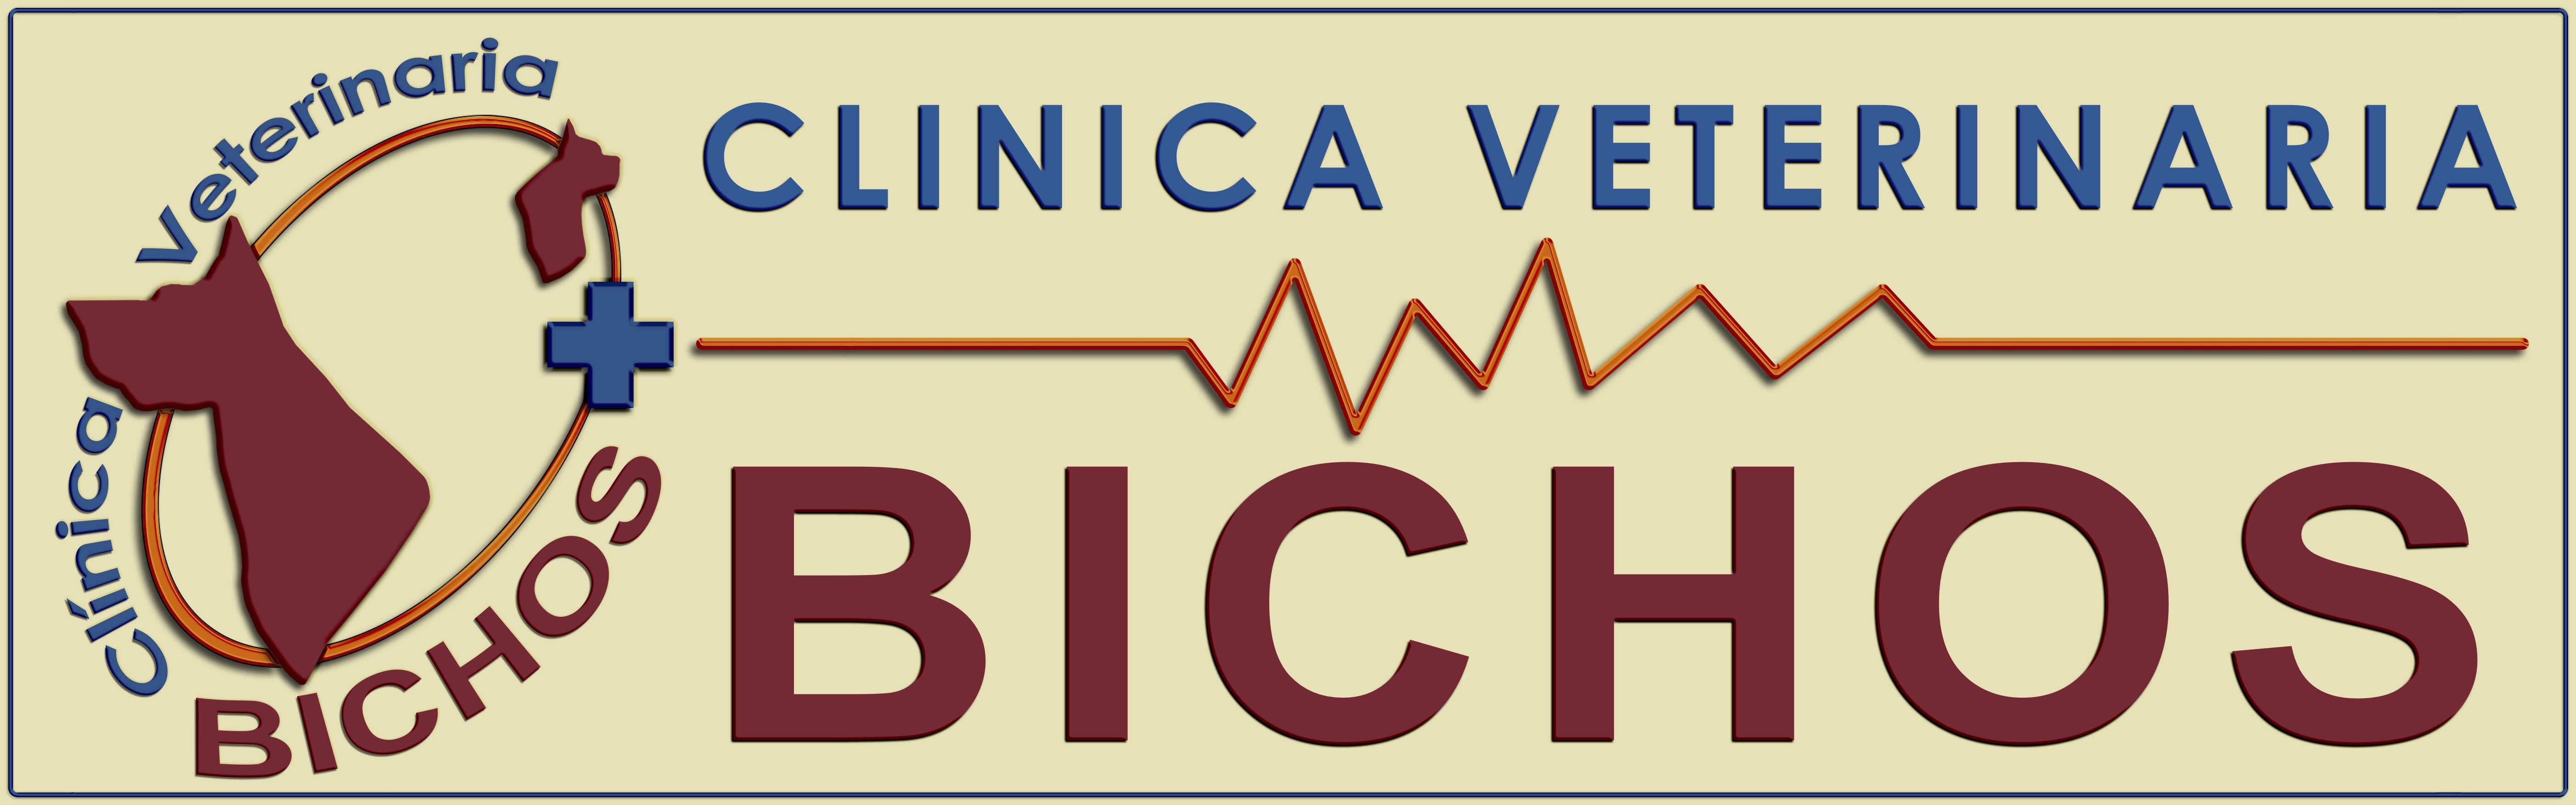 Clínica Veterinaria Bichos